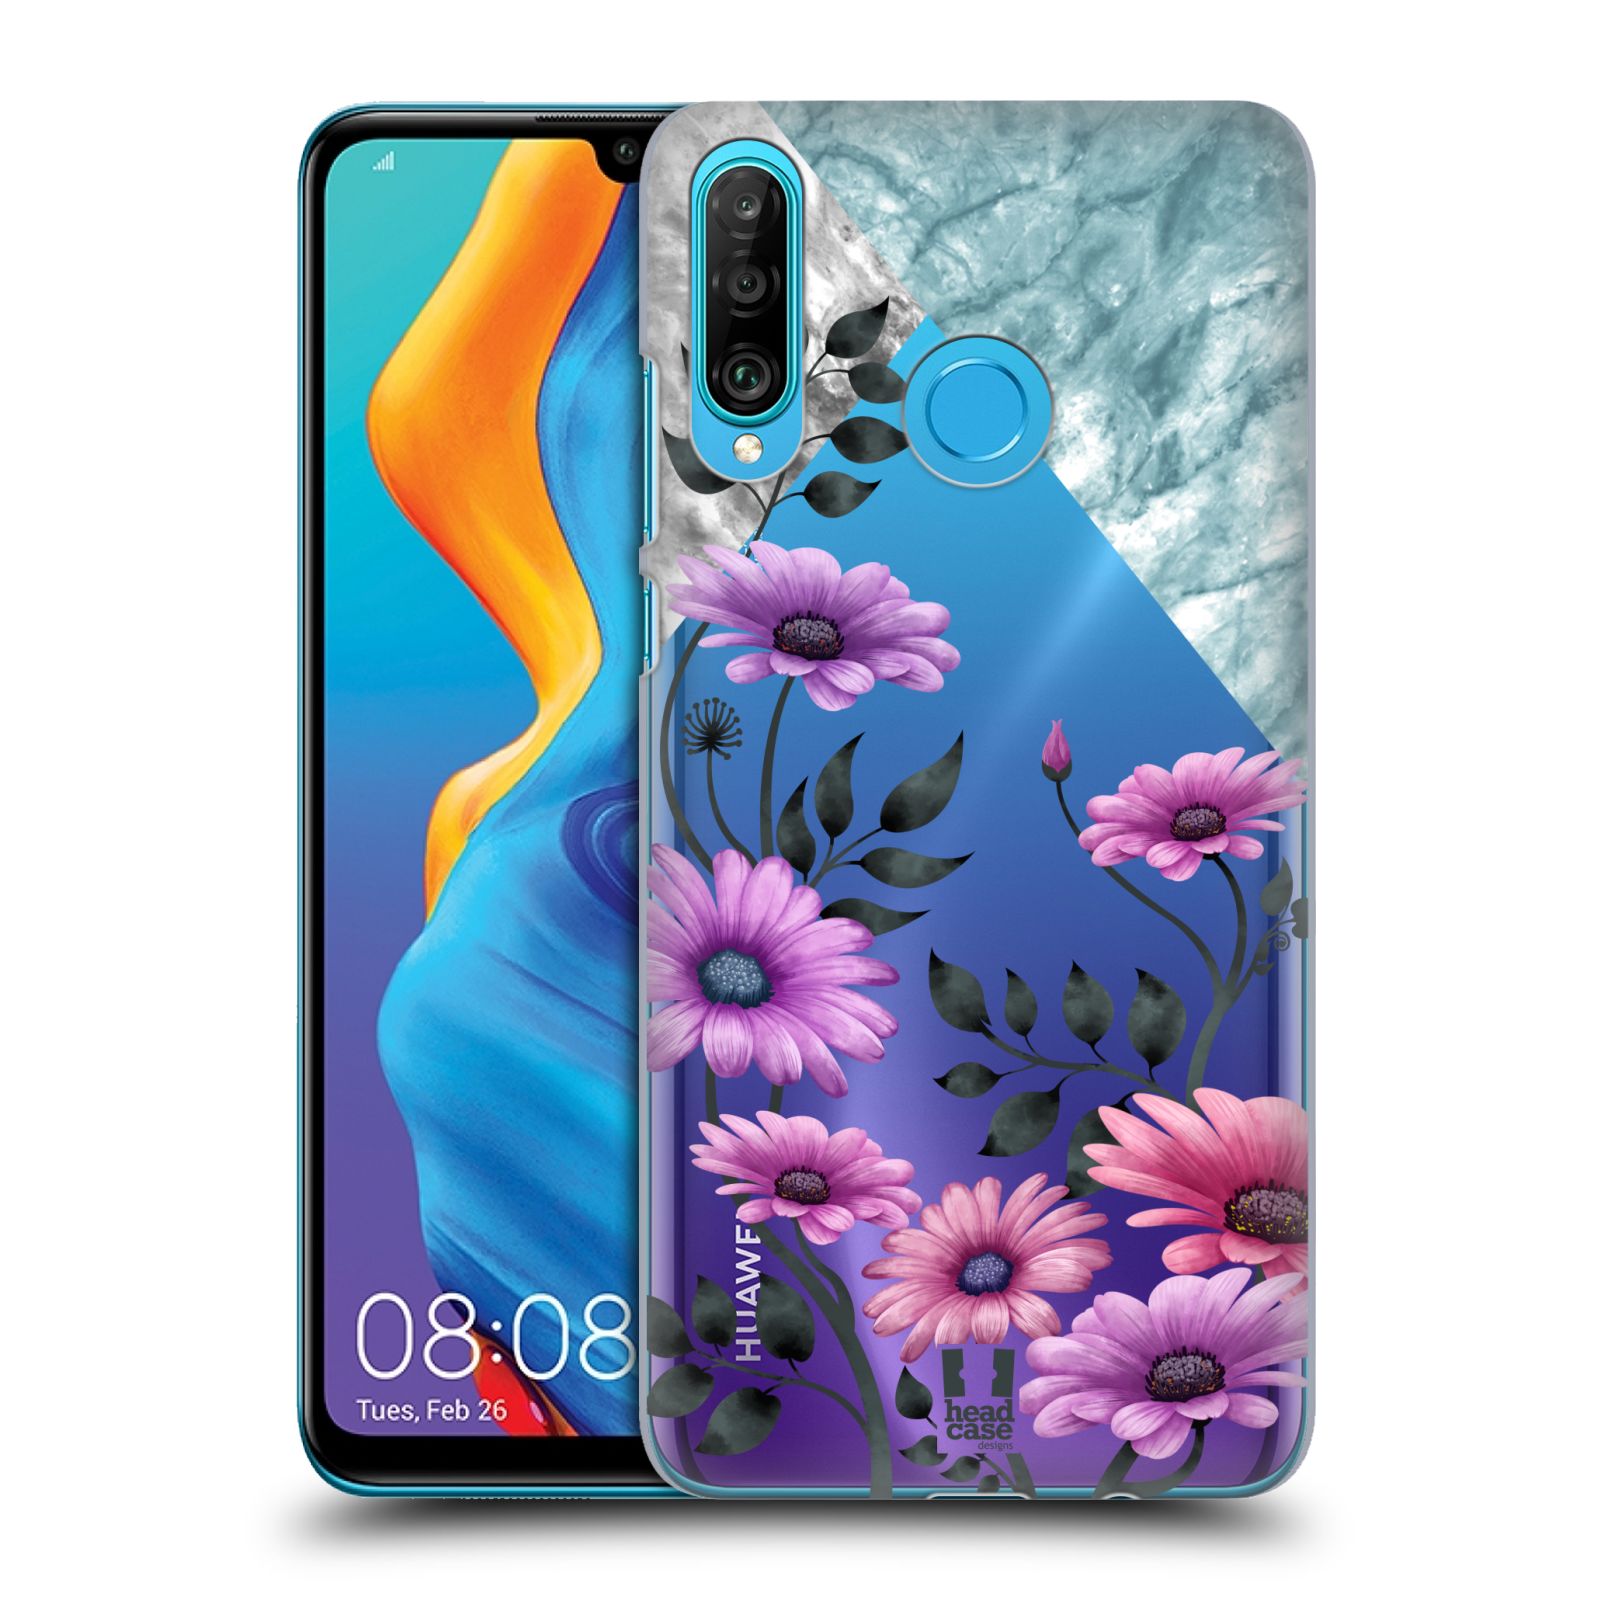 Pouzdro na mobil Huawei P30 LITE - HEAD CASE - květiny hvězdnice, Aster fialová a modrá